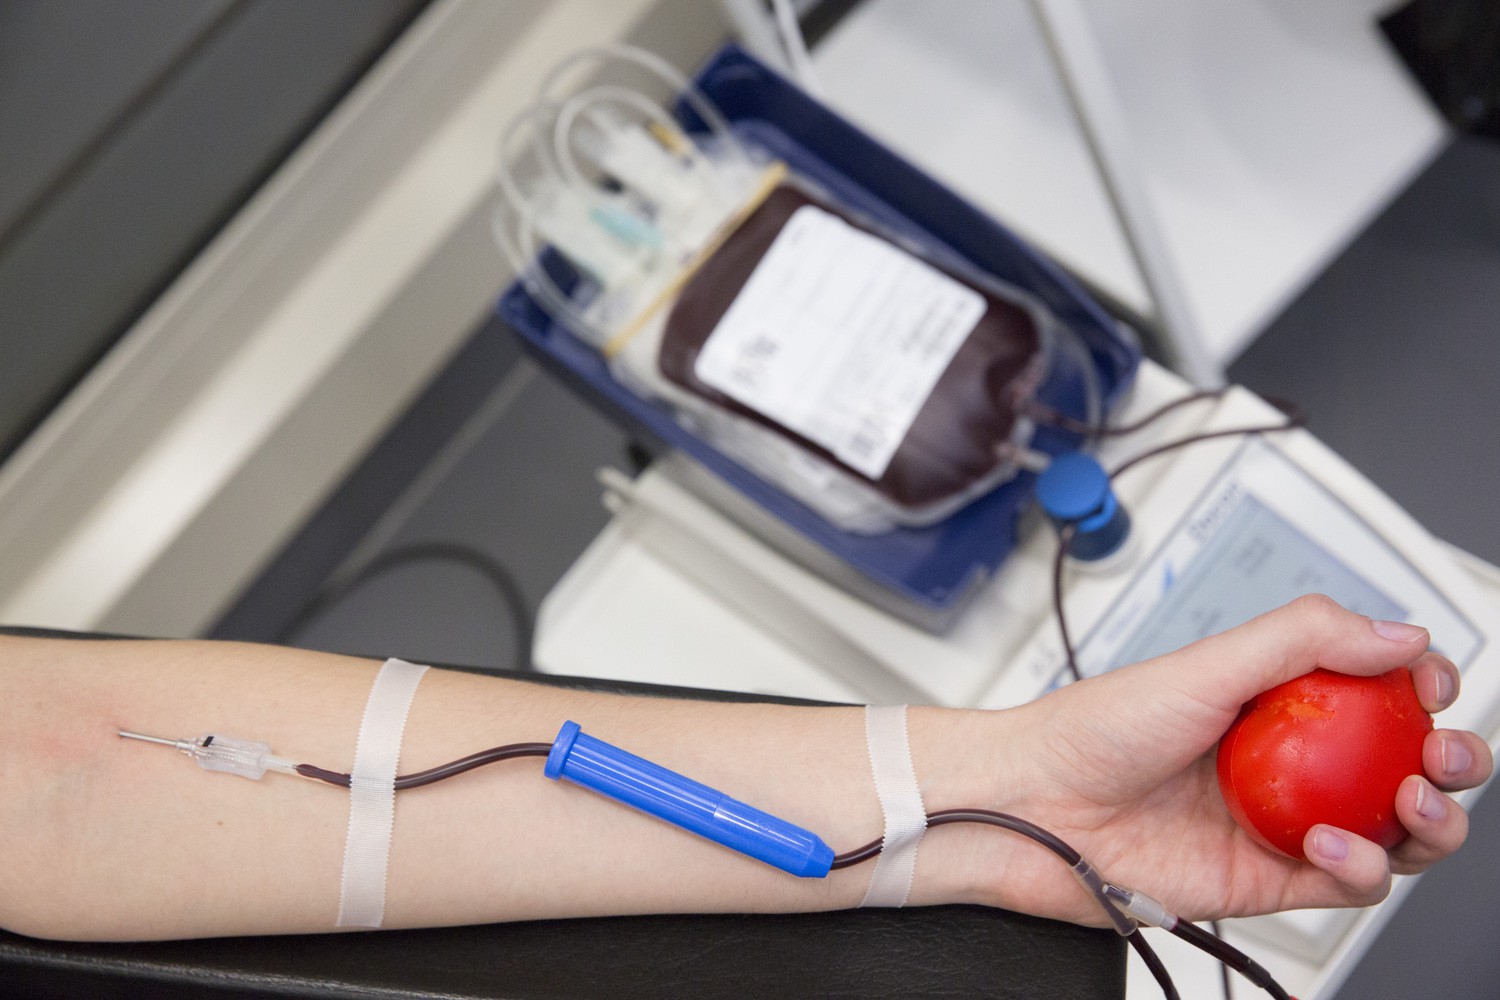 Wer mit einer Blutspende helfen möchte, kann telefonisch oder online seinen persönlichen Spendetermin für eine Vollblut- oder Plasmaspende an der UKL-Blutbank vereinbaren.